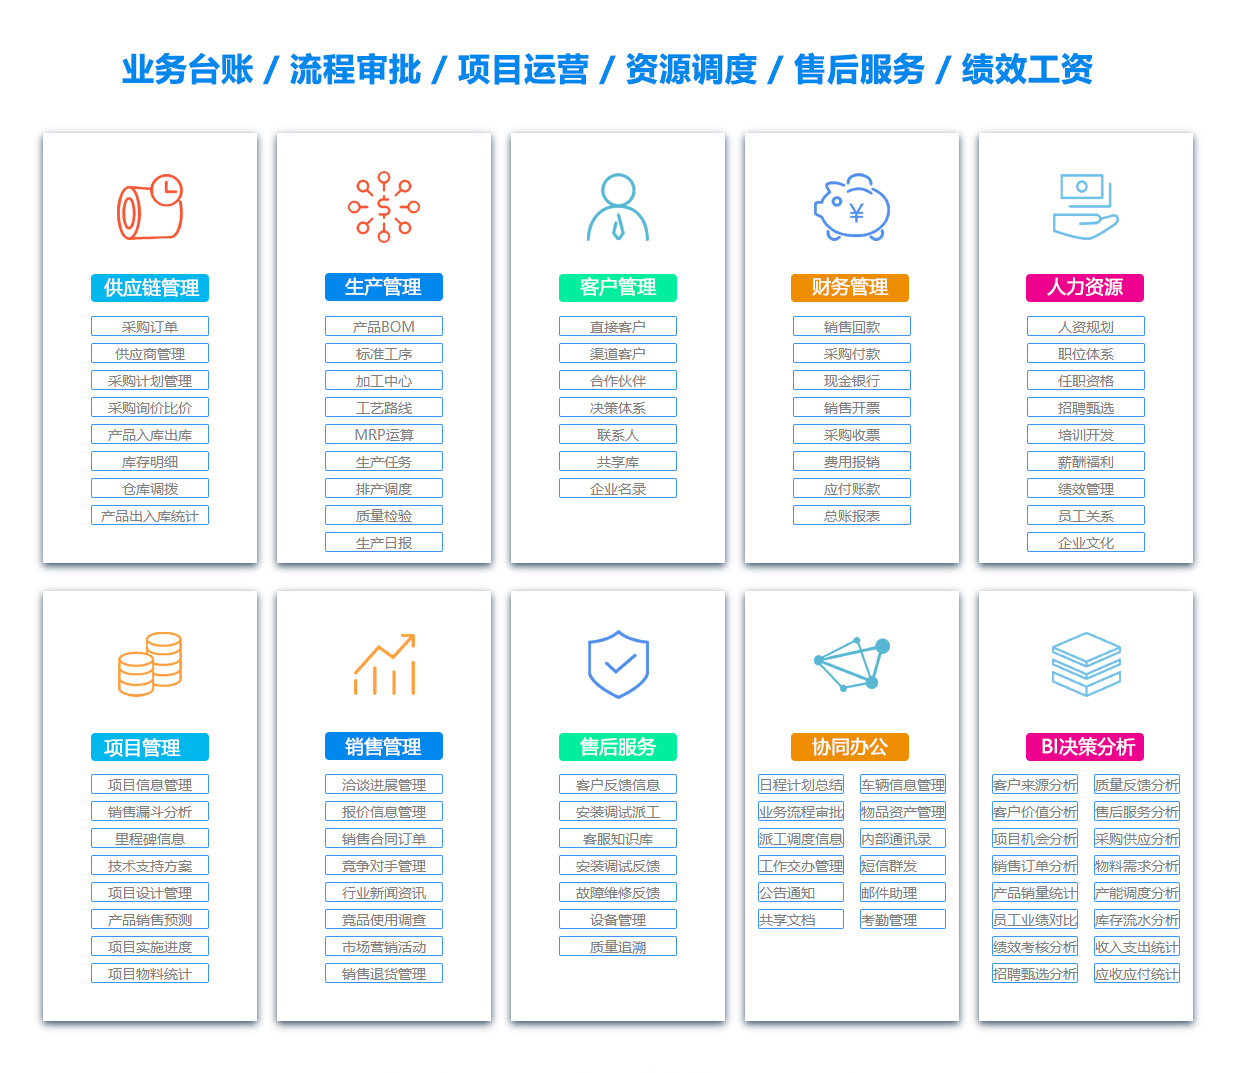 上海PDM:产品数据管理系统